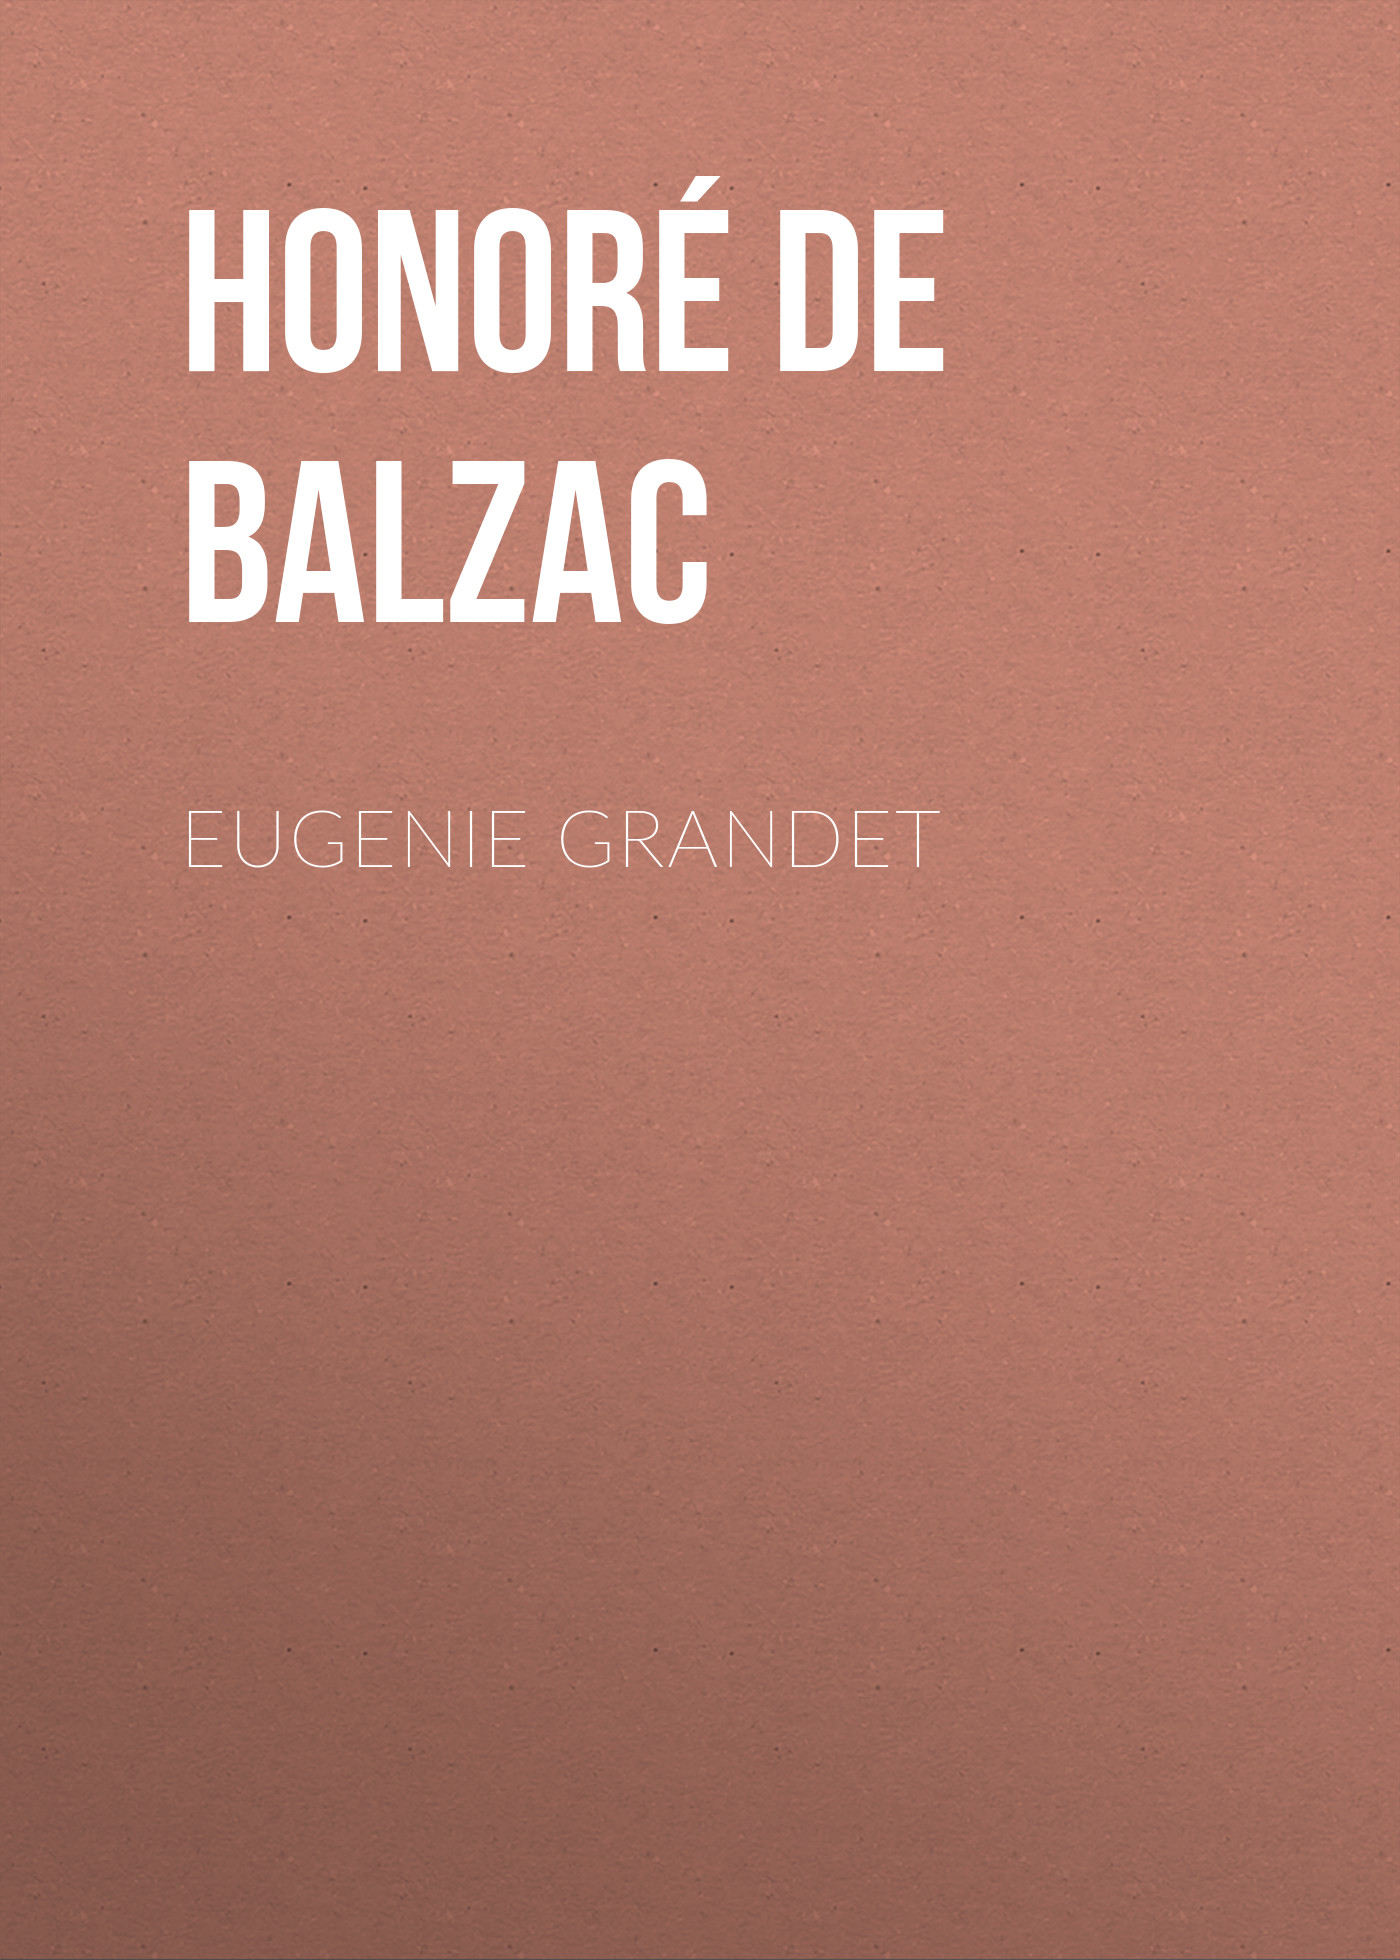 Книга Eugenie Grandet из серии , созданная Honoré Balzac, может относится к жанру Литература 19 века, Зарубежная старинная литература, Зарубежная классика. Стоимость электронной книги Eugenie Grandet с идентификатором 25020843 составляет 0 руб.